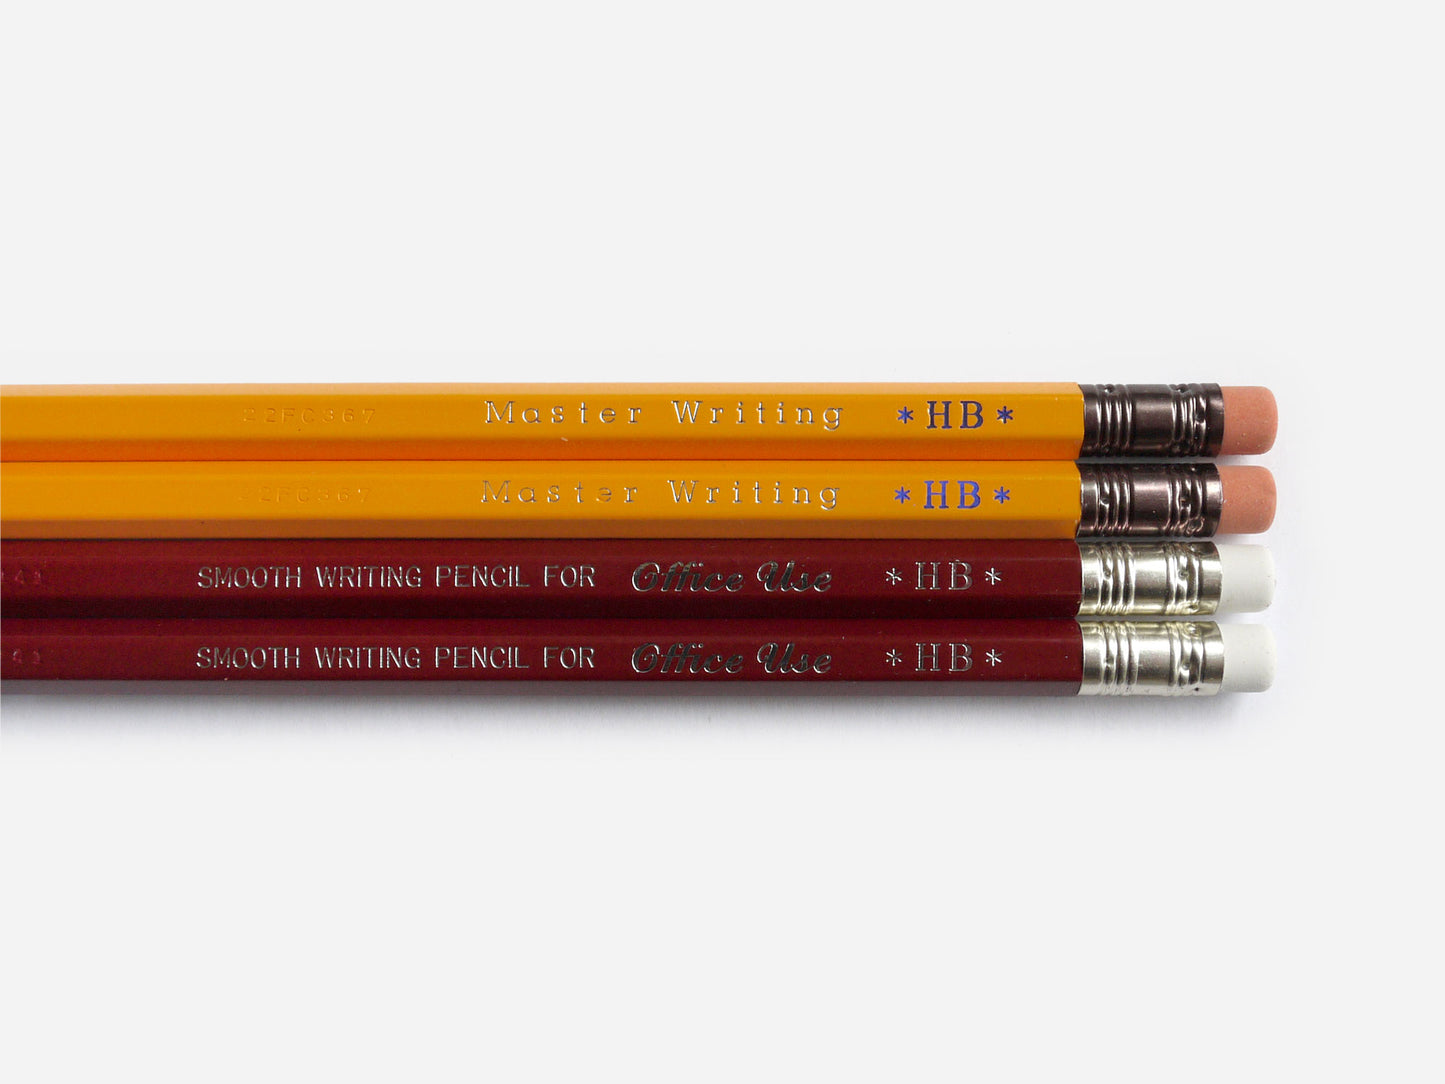 Mitsu-Bishi Pencils